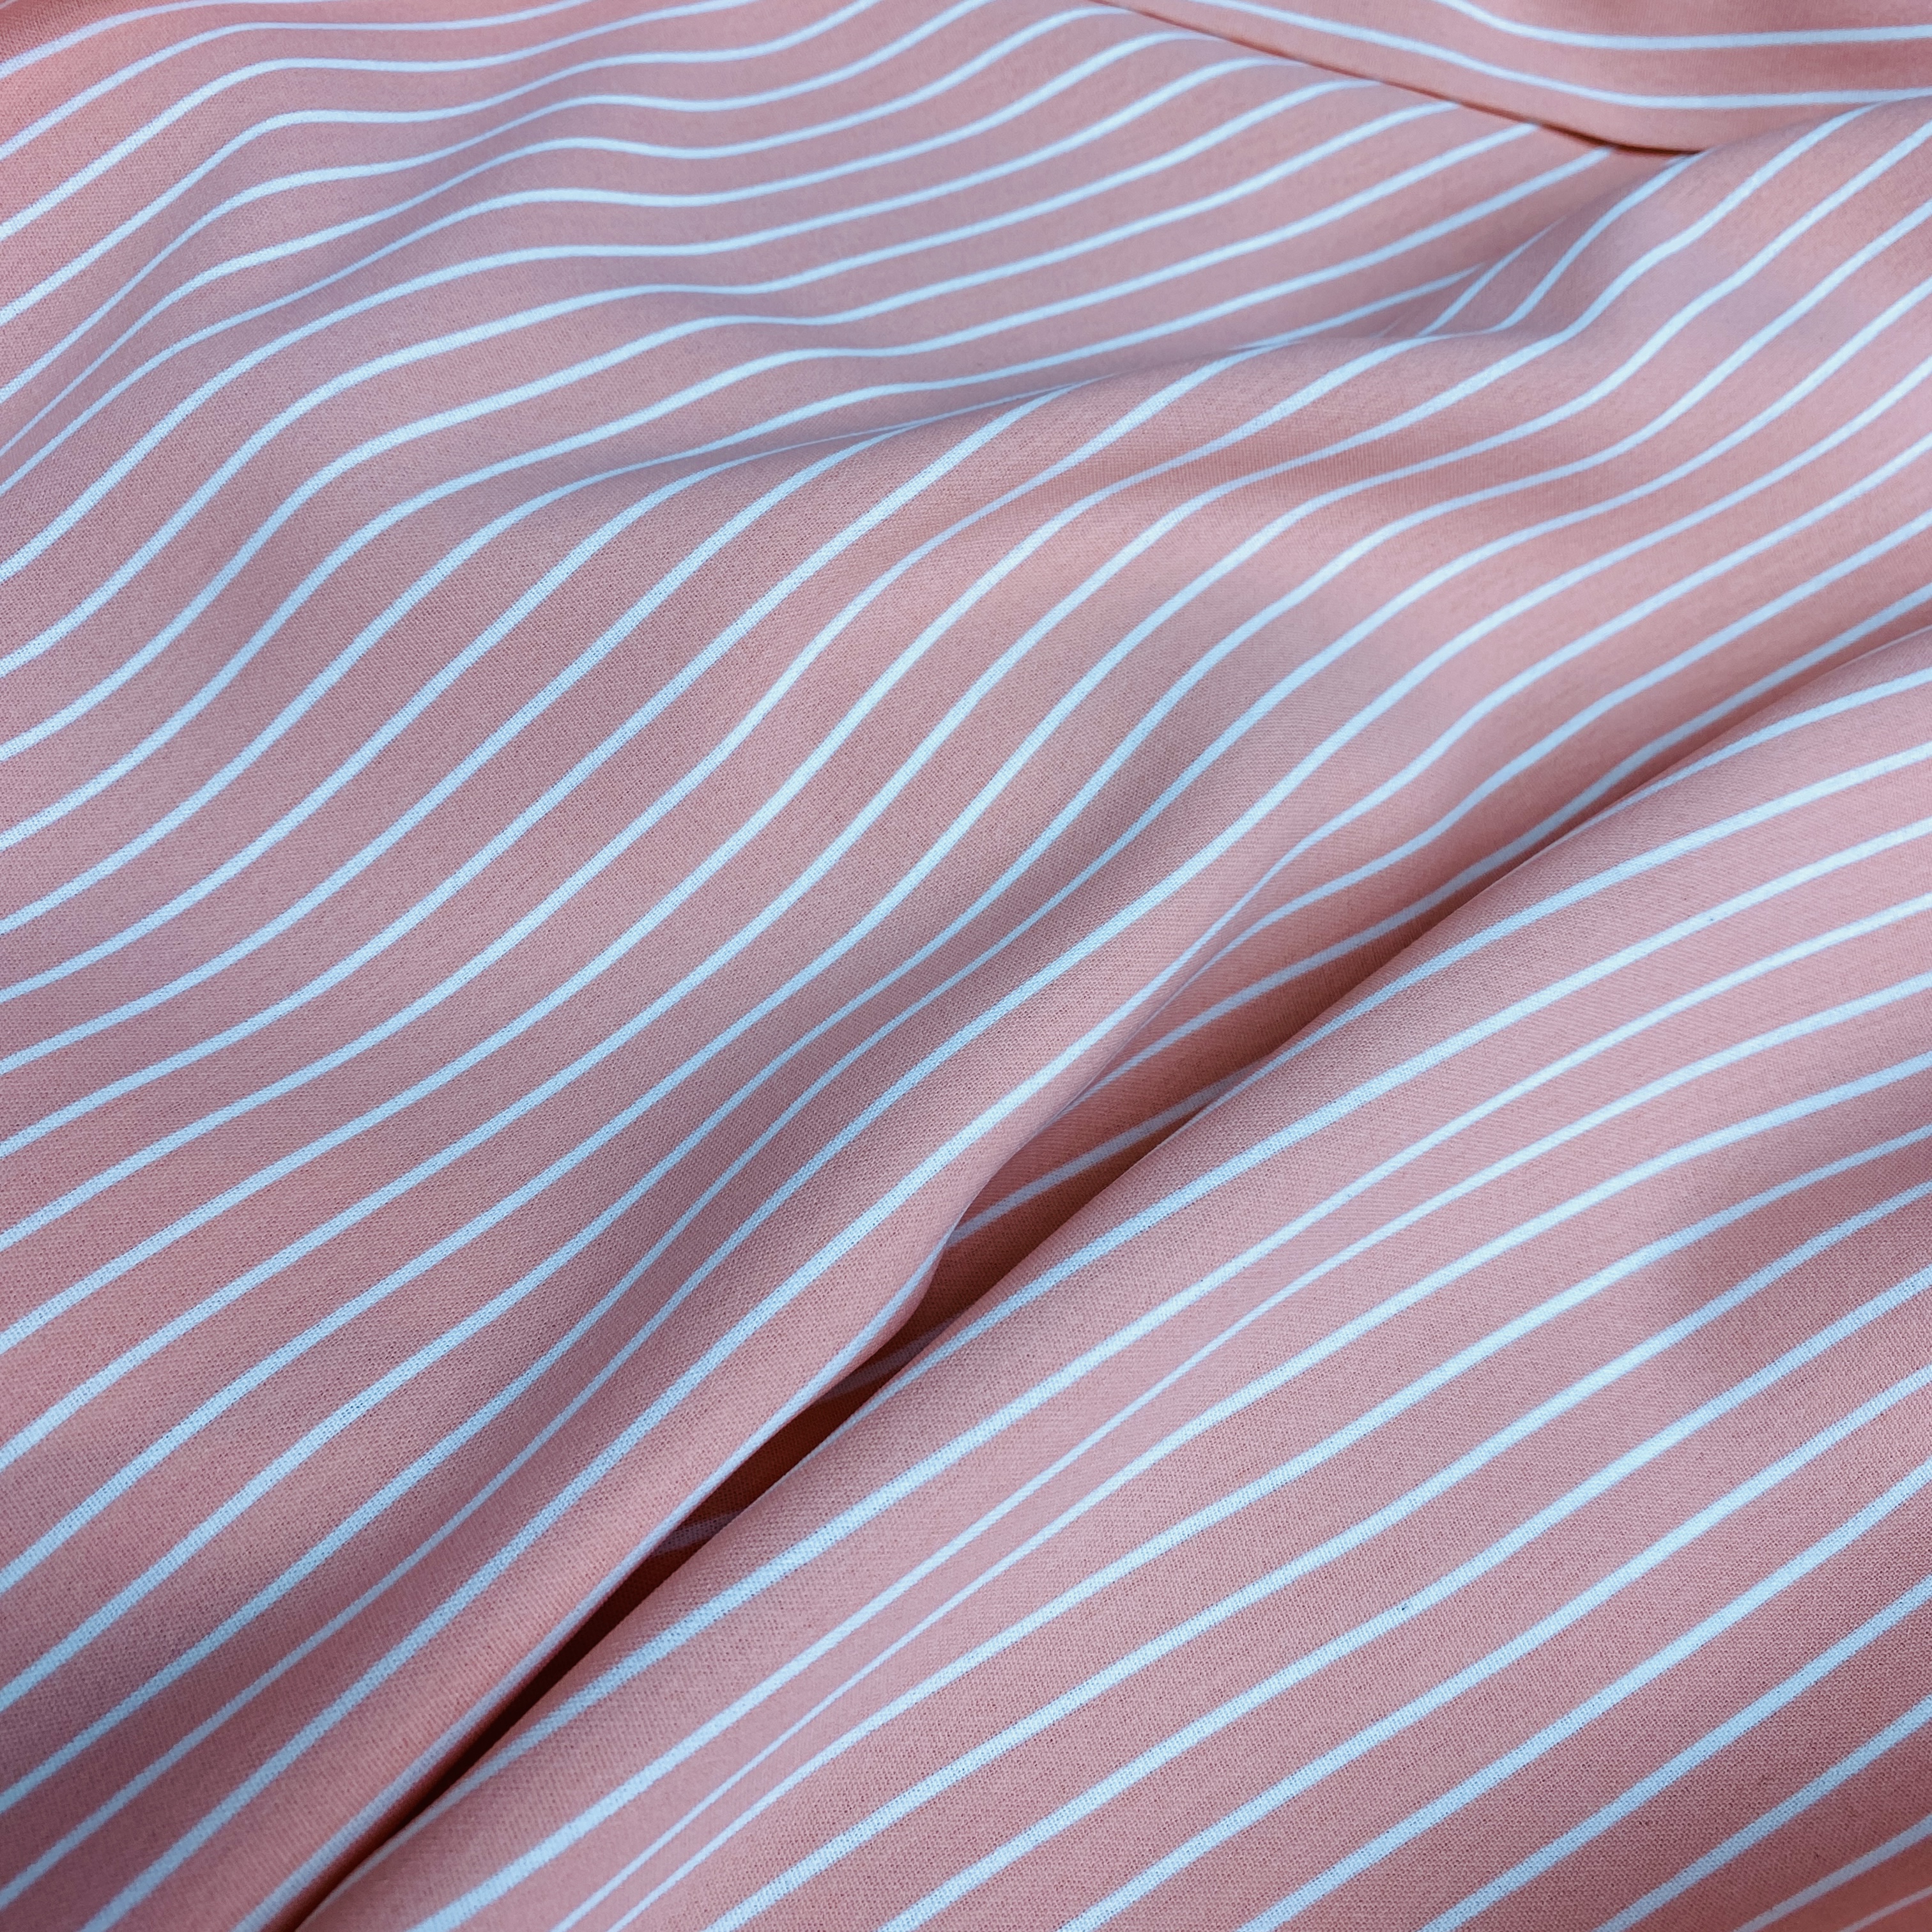 Vải đũi sọc trắng nền hồng may áo đầm bộ MS9112